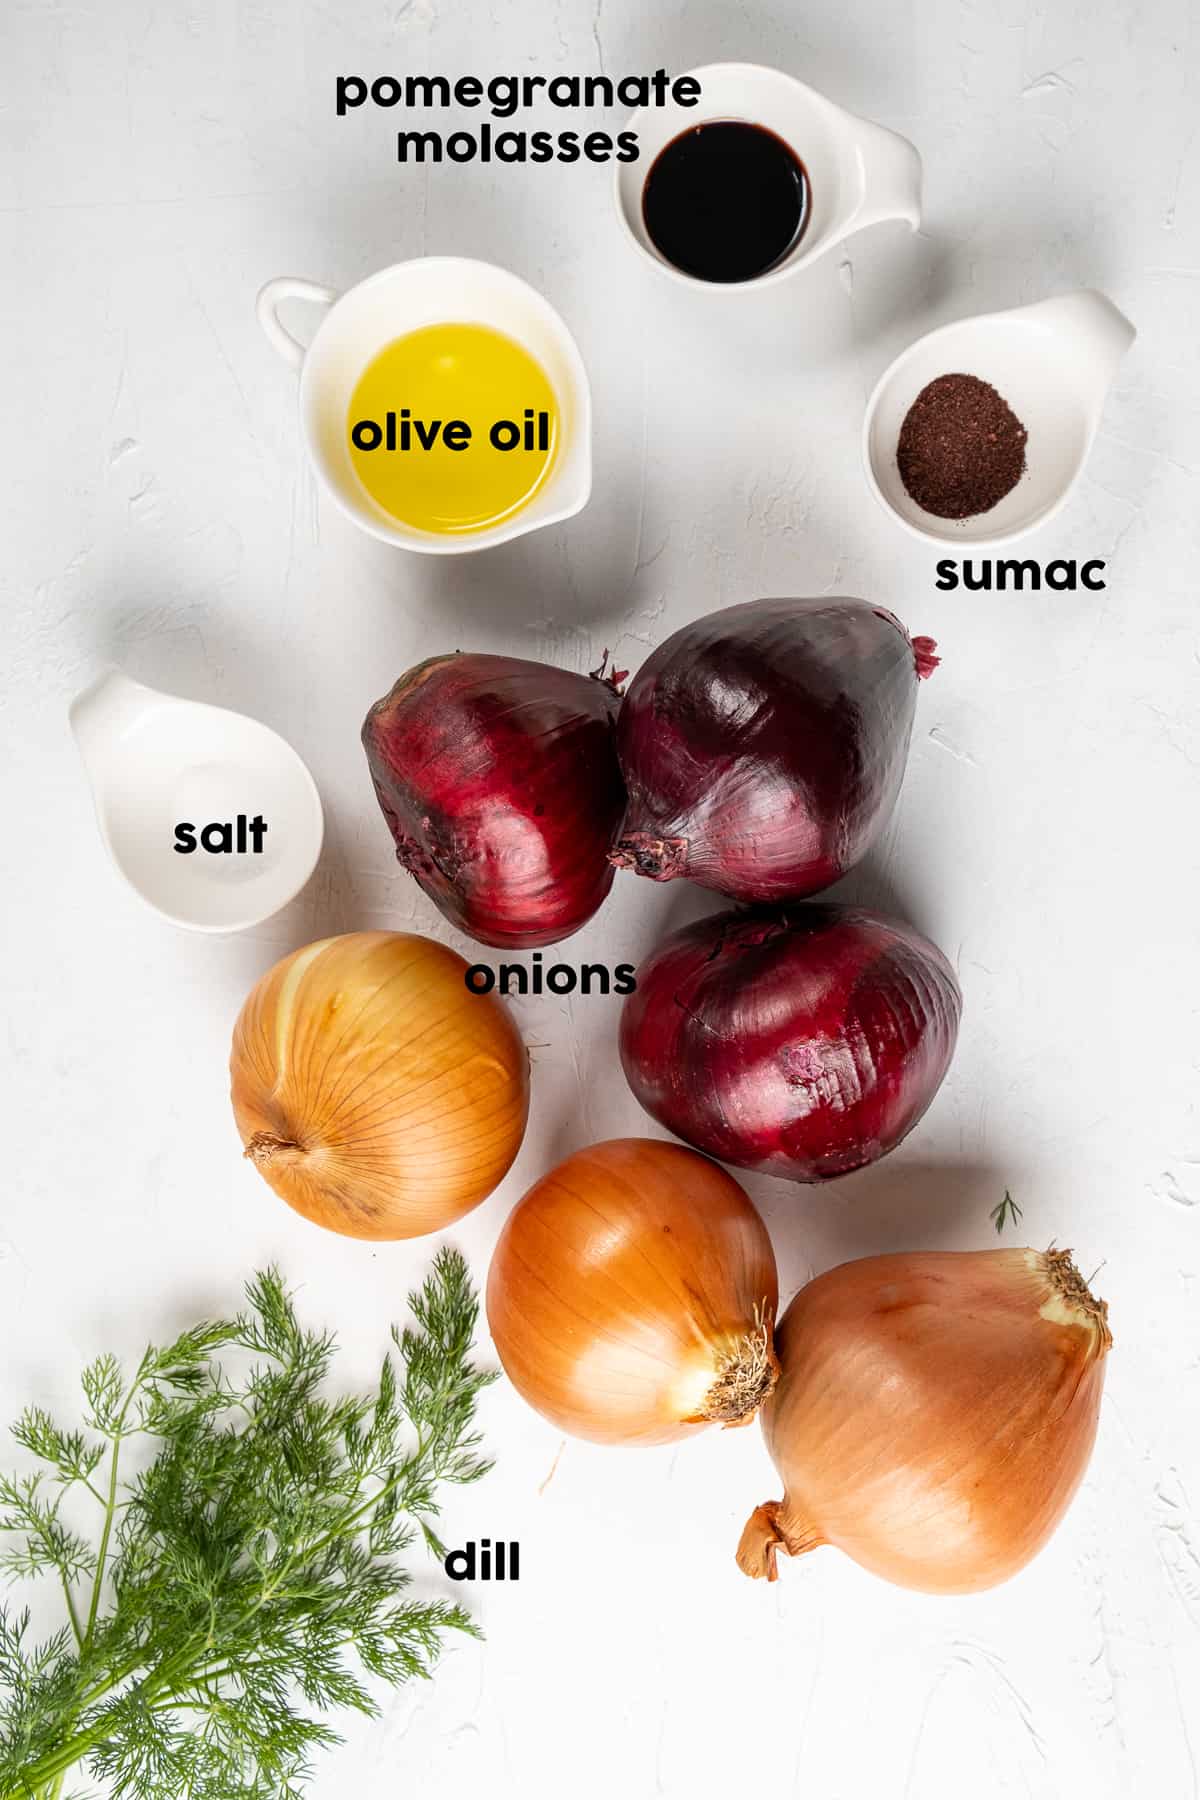 红洋葱，棕洋葱，新鲜的莳萝，橄榄油，石榴糖浆，漆树和盐，在浅色的背景上。